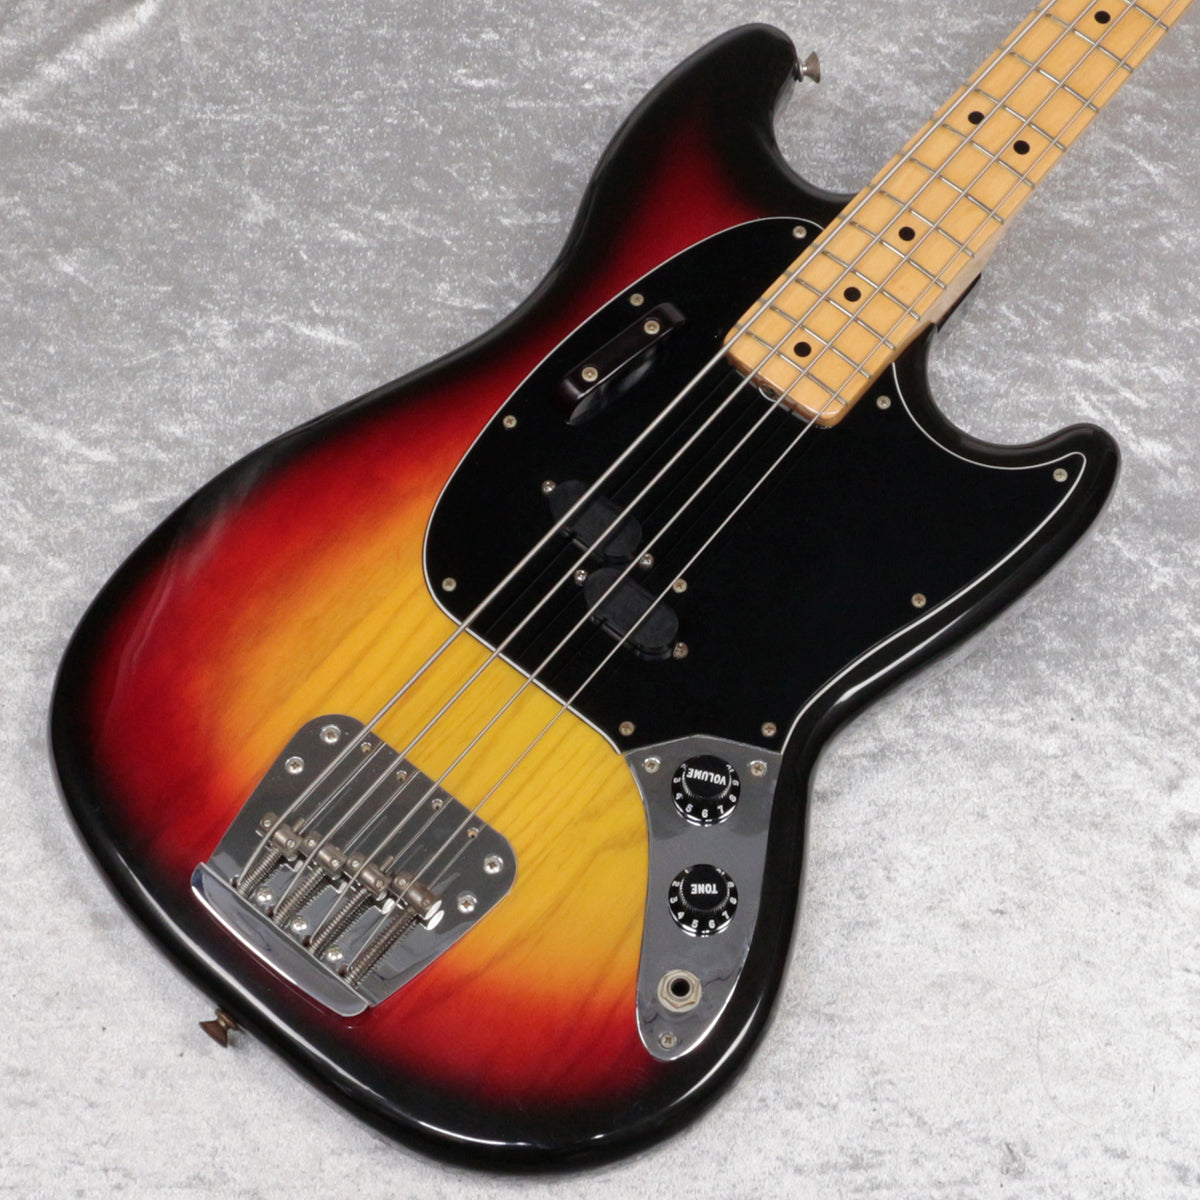 [SN S708527] USED Fender / 1978 Mustang Bass Sunburst [06]